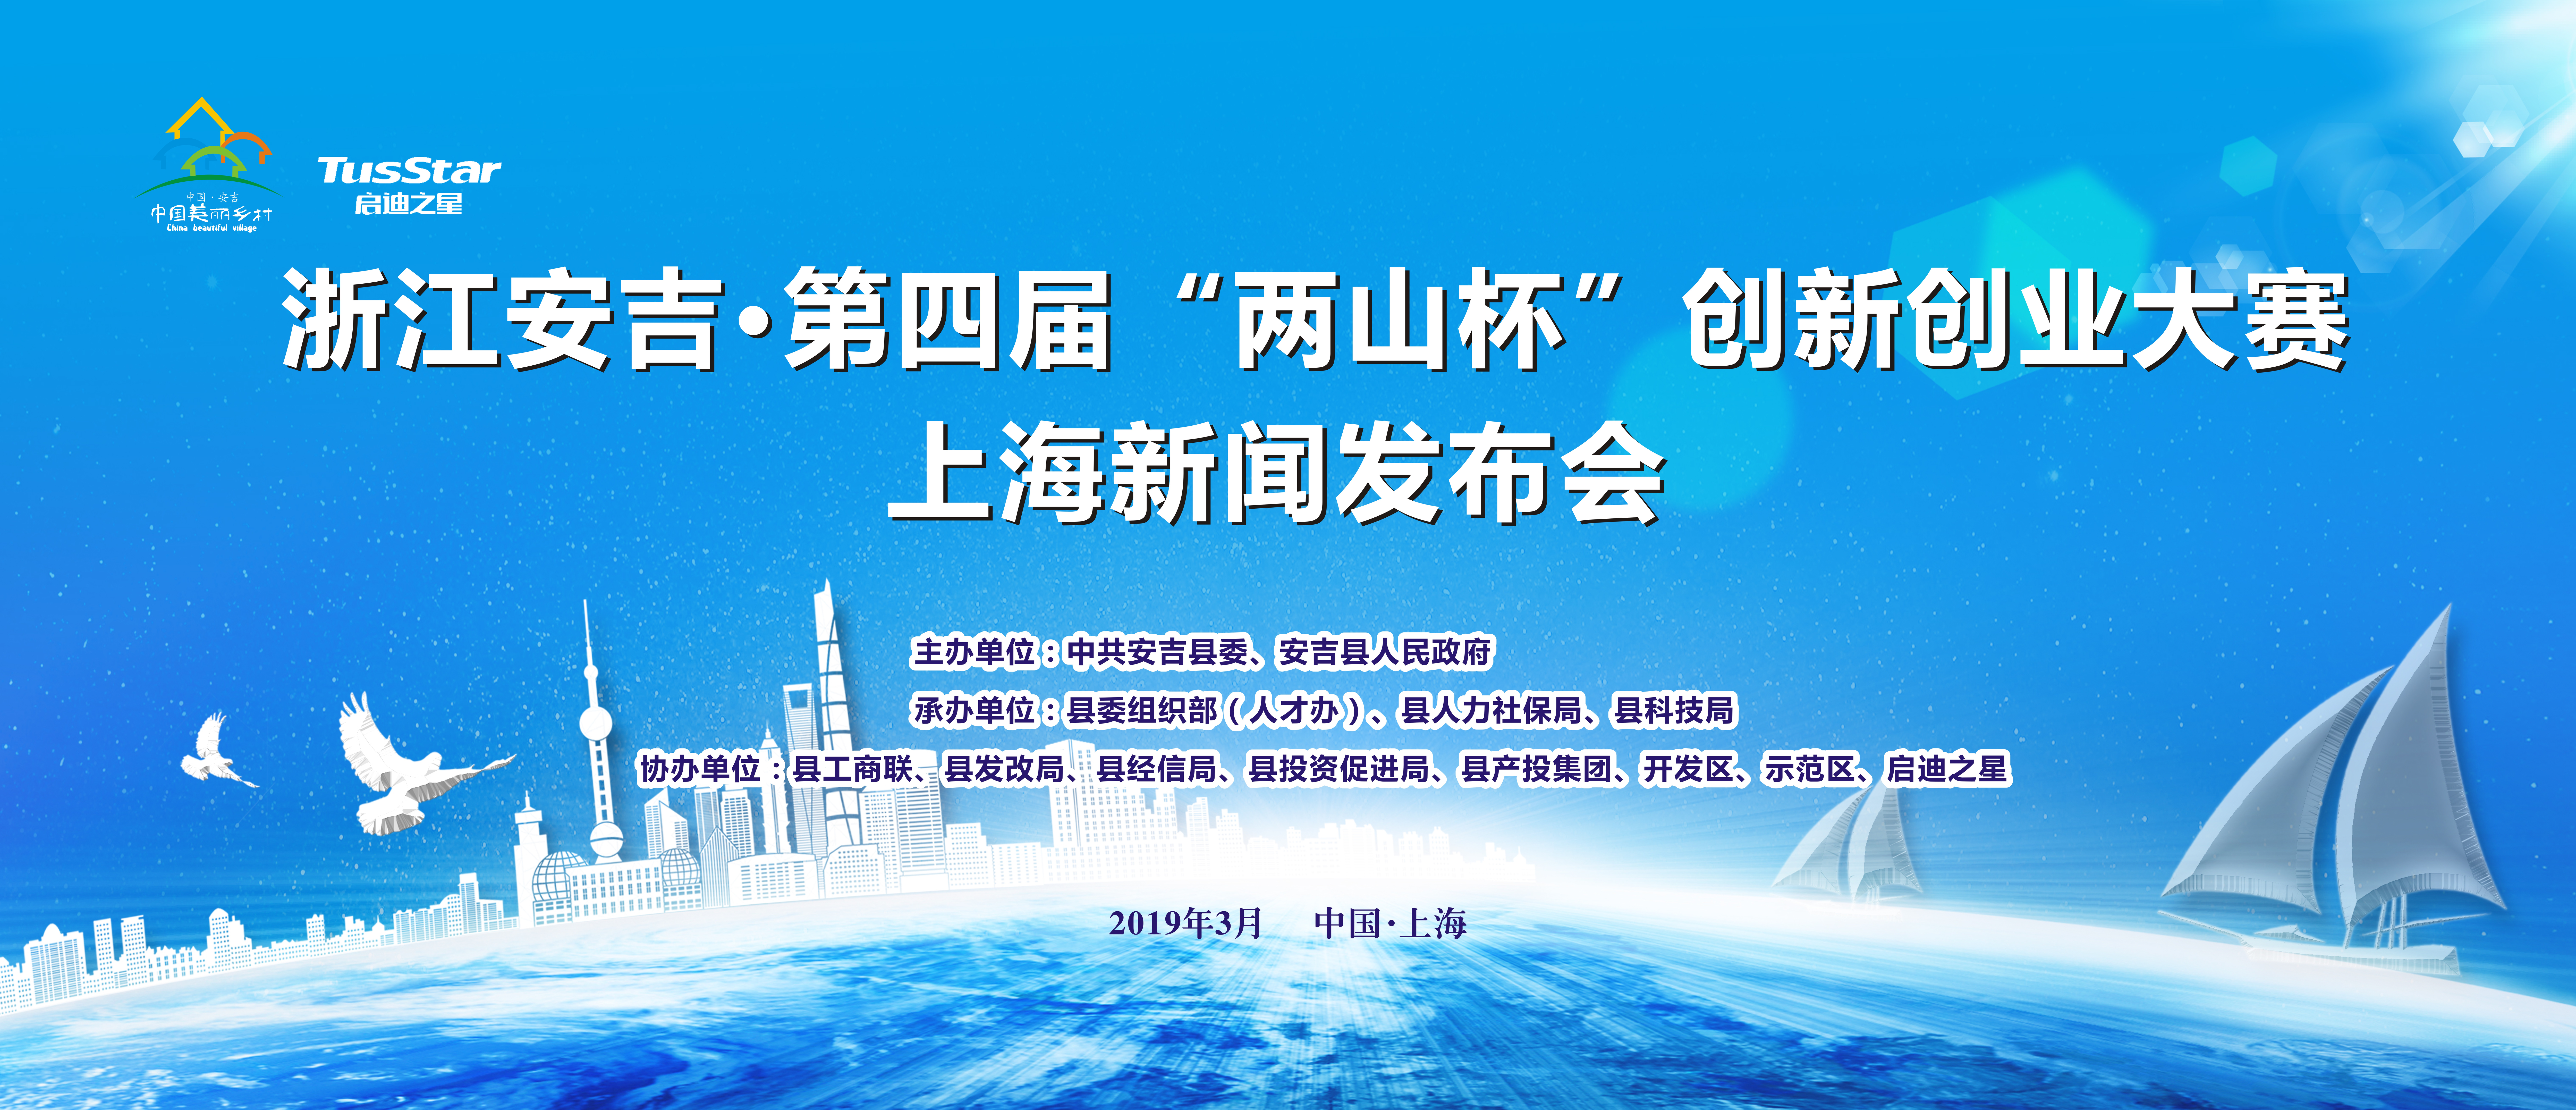 浙江安吉·第四届两山杯创新创业大赛上海发布会